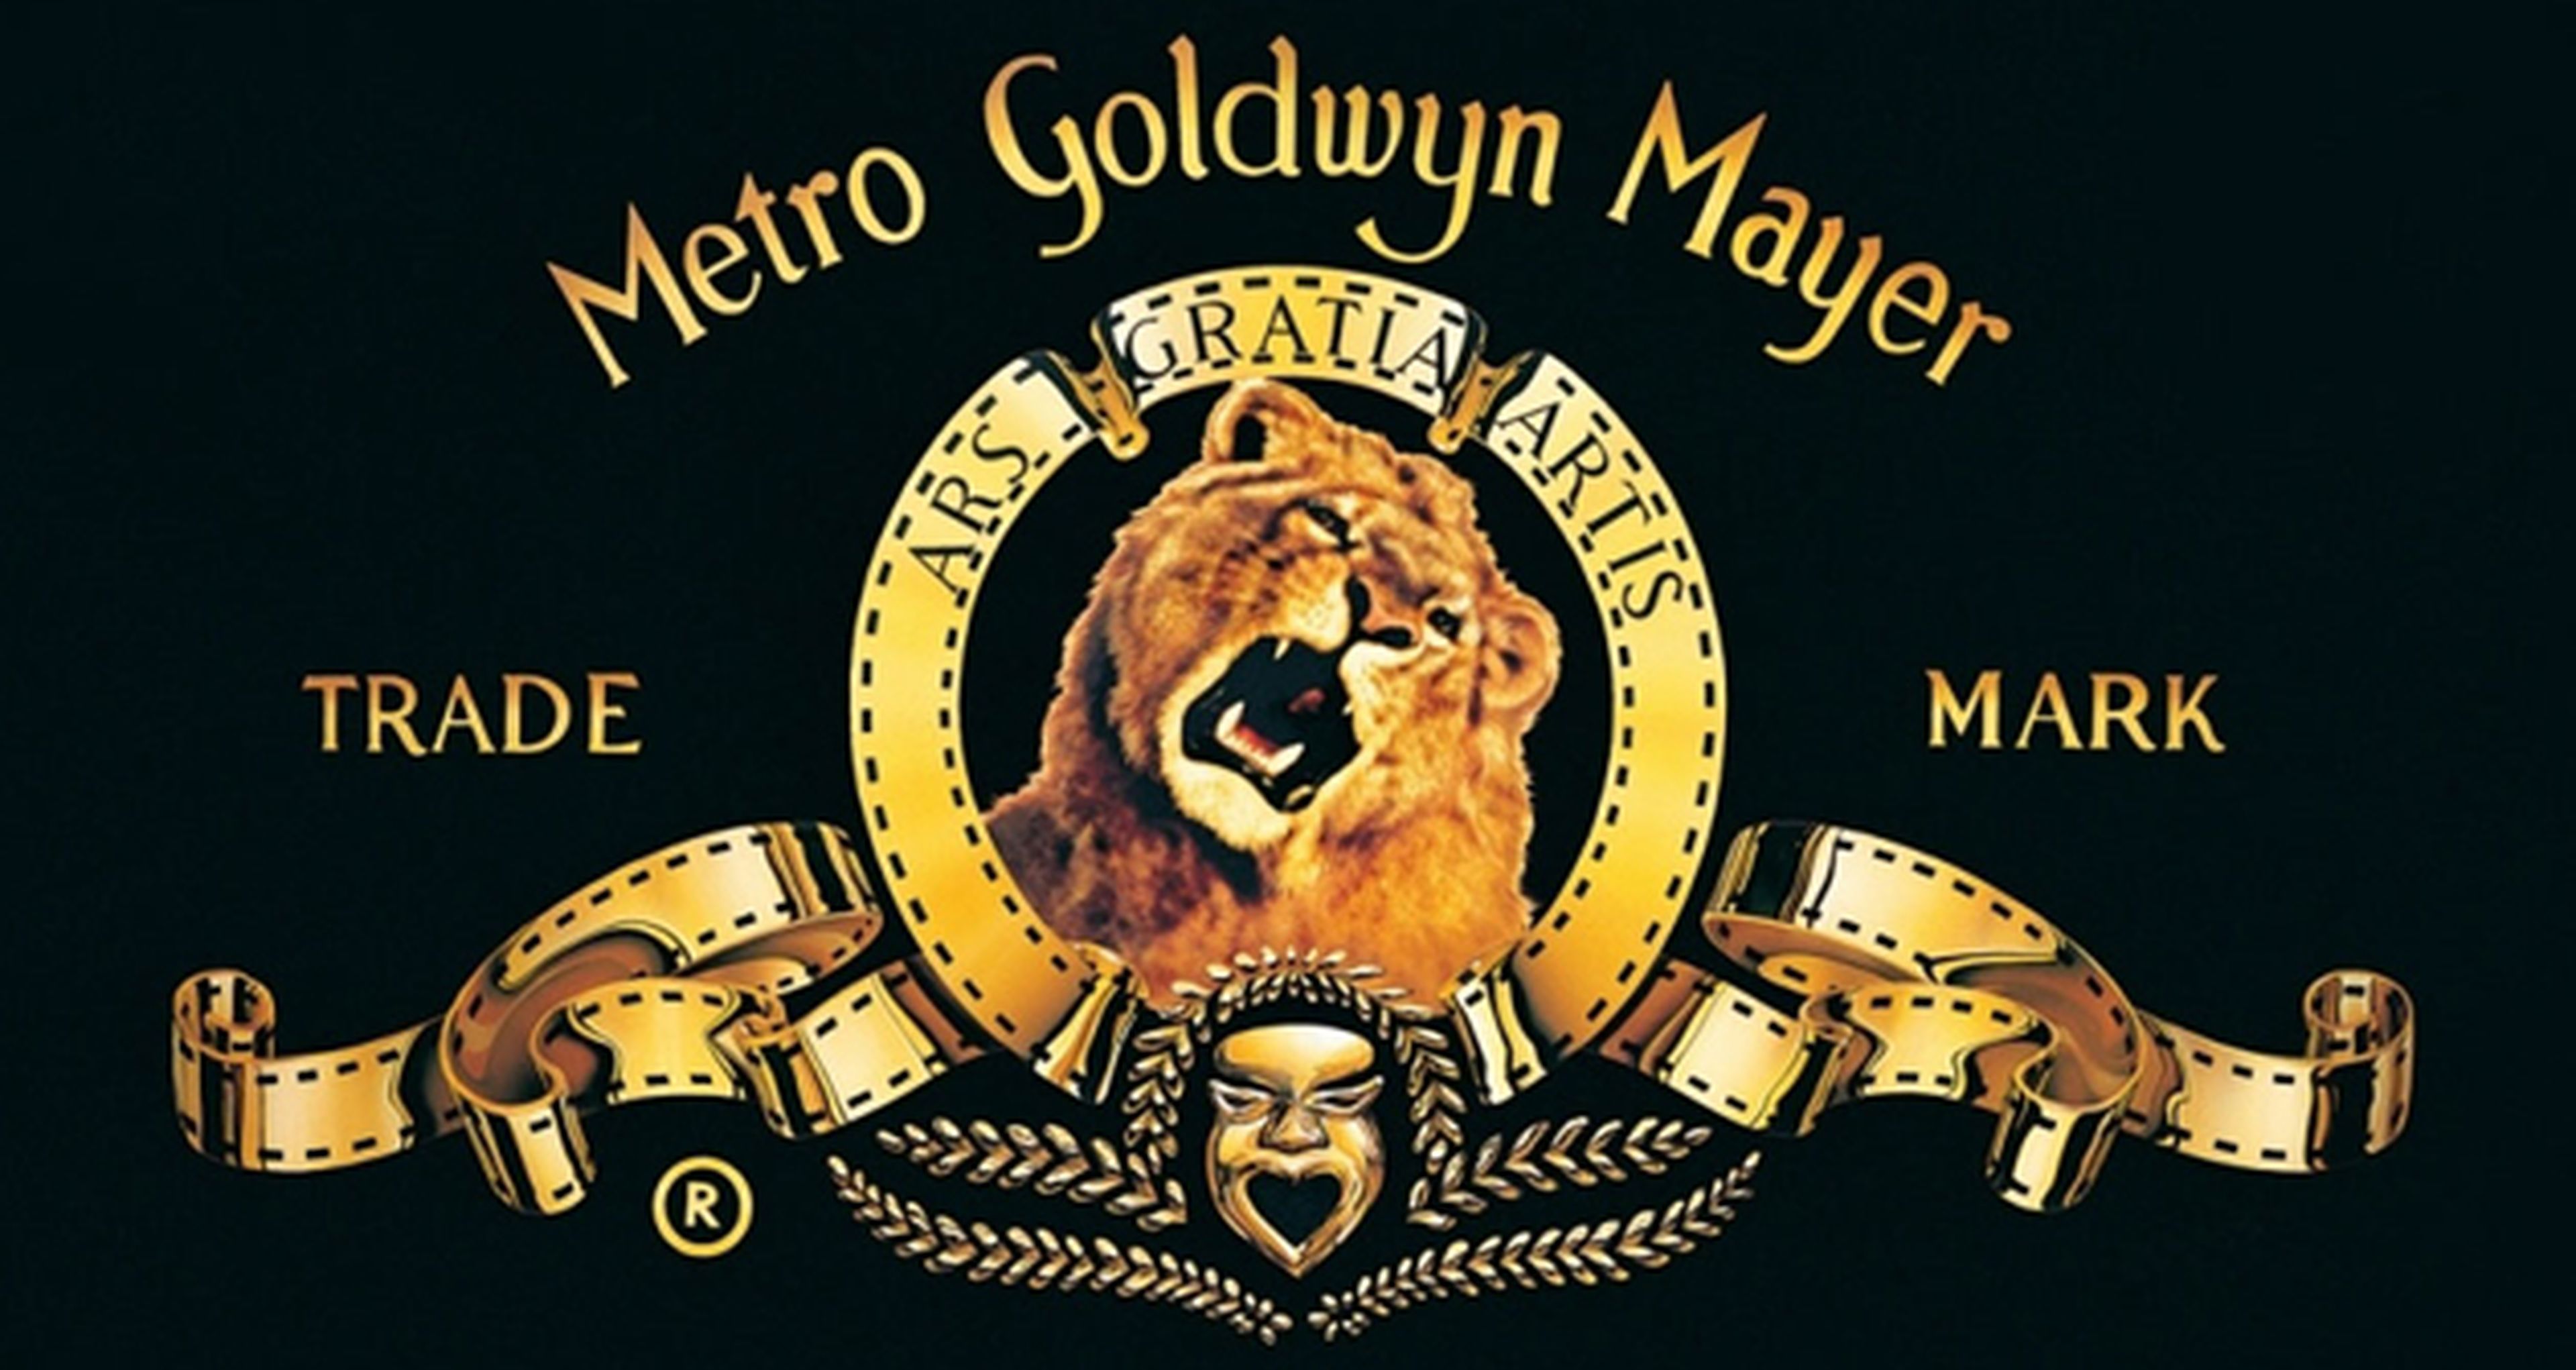 90 años de cine con Metro Goldwyn-Mayer